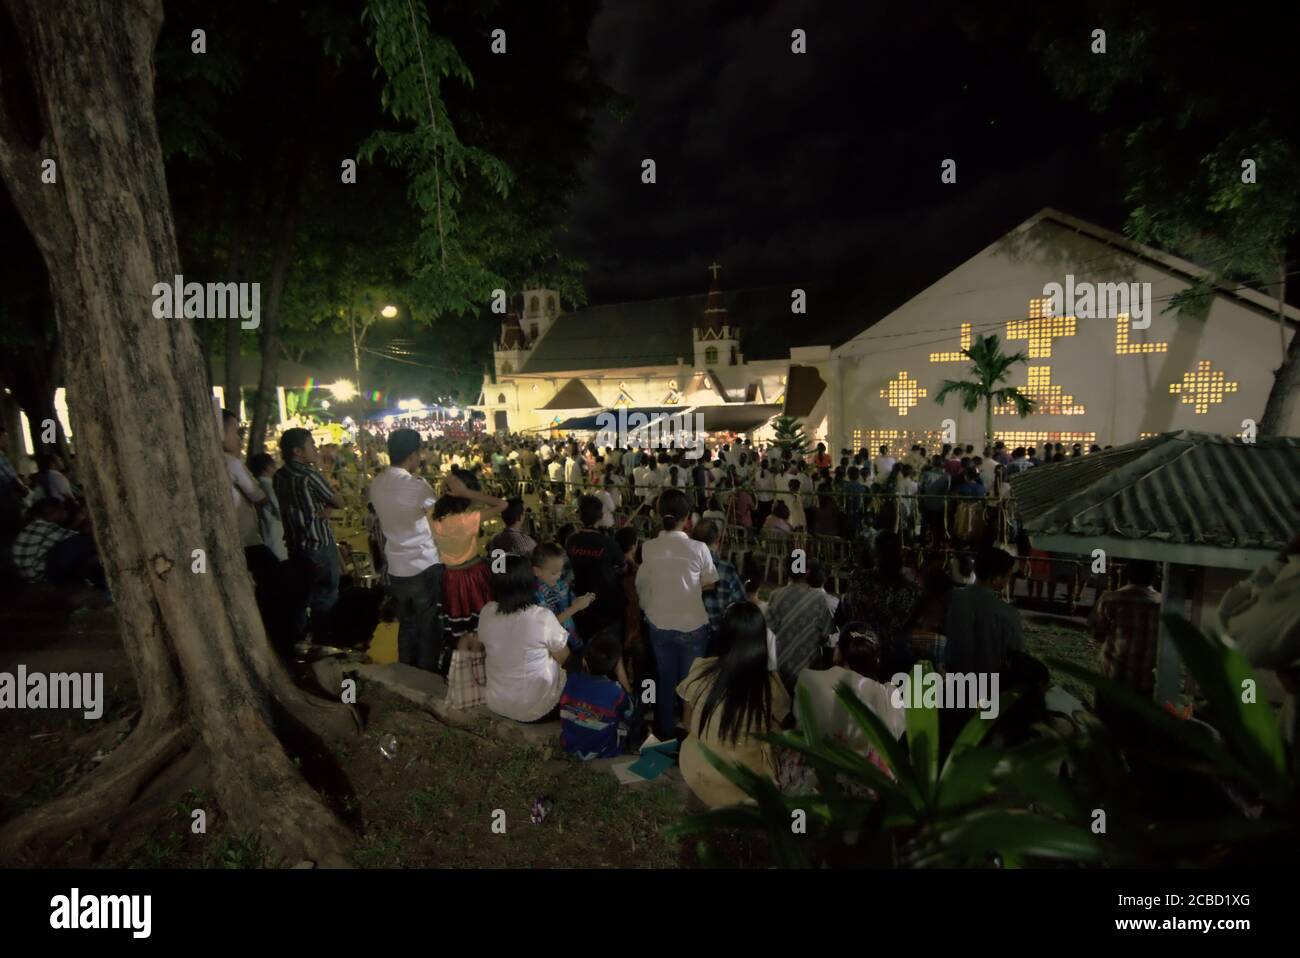 Larantuka, Indonesien. April 2015. Bürger und Pilger aus Larantuka, die am Gründonnerstag an einem Gottesdienst in der Kathedrale von Larantuka teilnehmen, ein Teil der Feierlichkeiten der Karwoche in Larantuka, Indonesien. Stockfoto